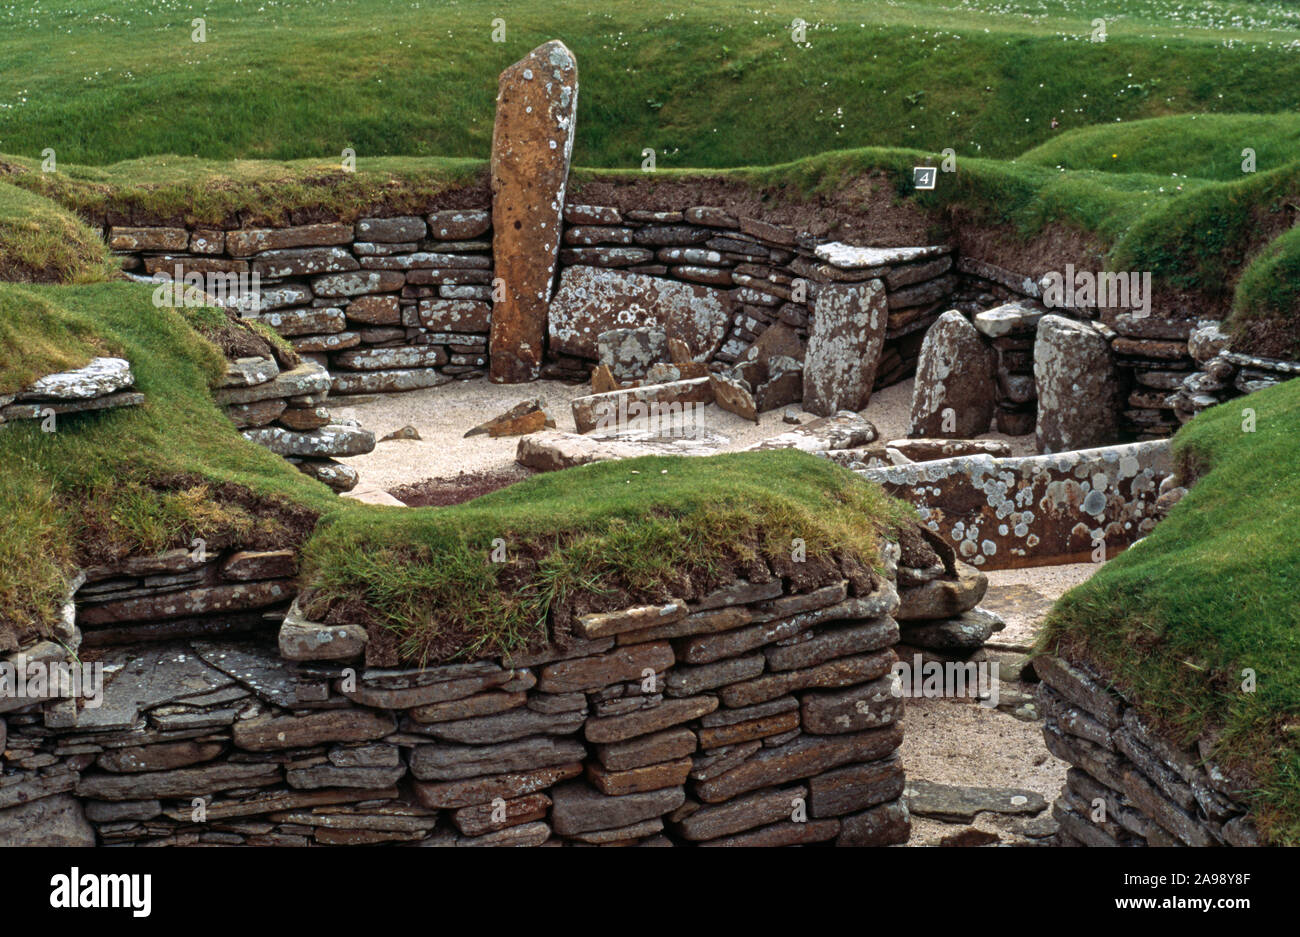 SKARA BRAE PRÄHISTORISCHES HAUS. 5000 Jahre altes Dorf mit Hauslayout. Festland, INSEL, Orkney, Inseln. Schottland. GROSSBRITANNIEN Stockfoto